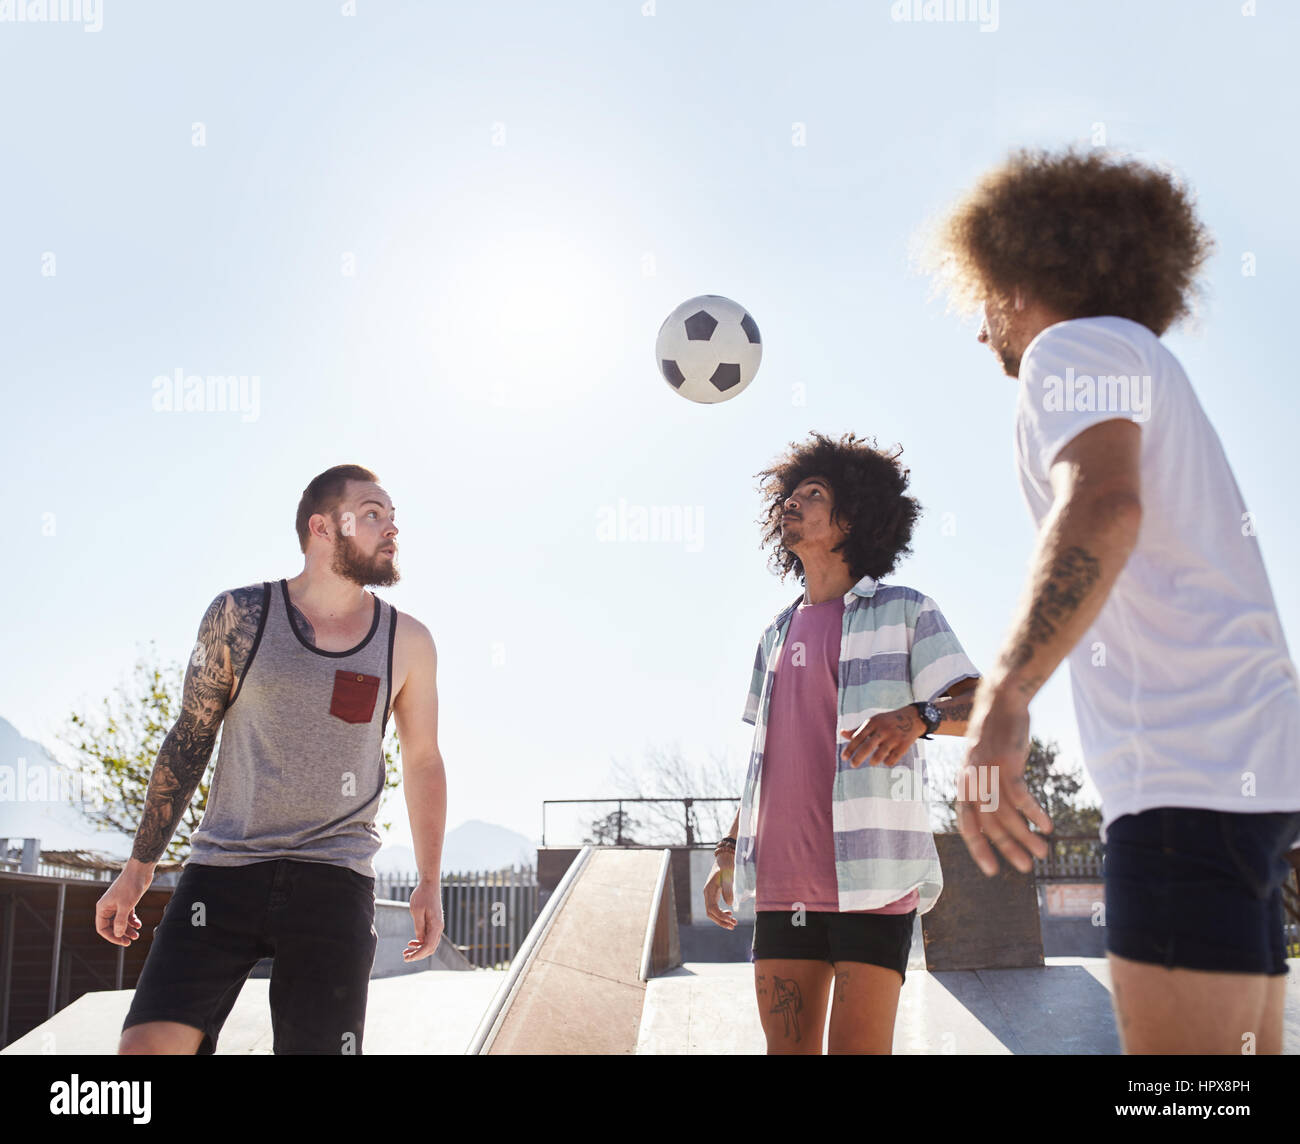 Amis à jouer au soccer à sunny skate park Banque D'Images